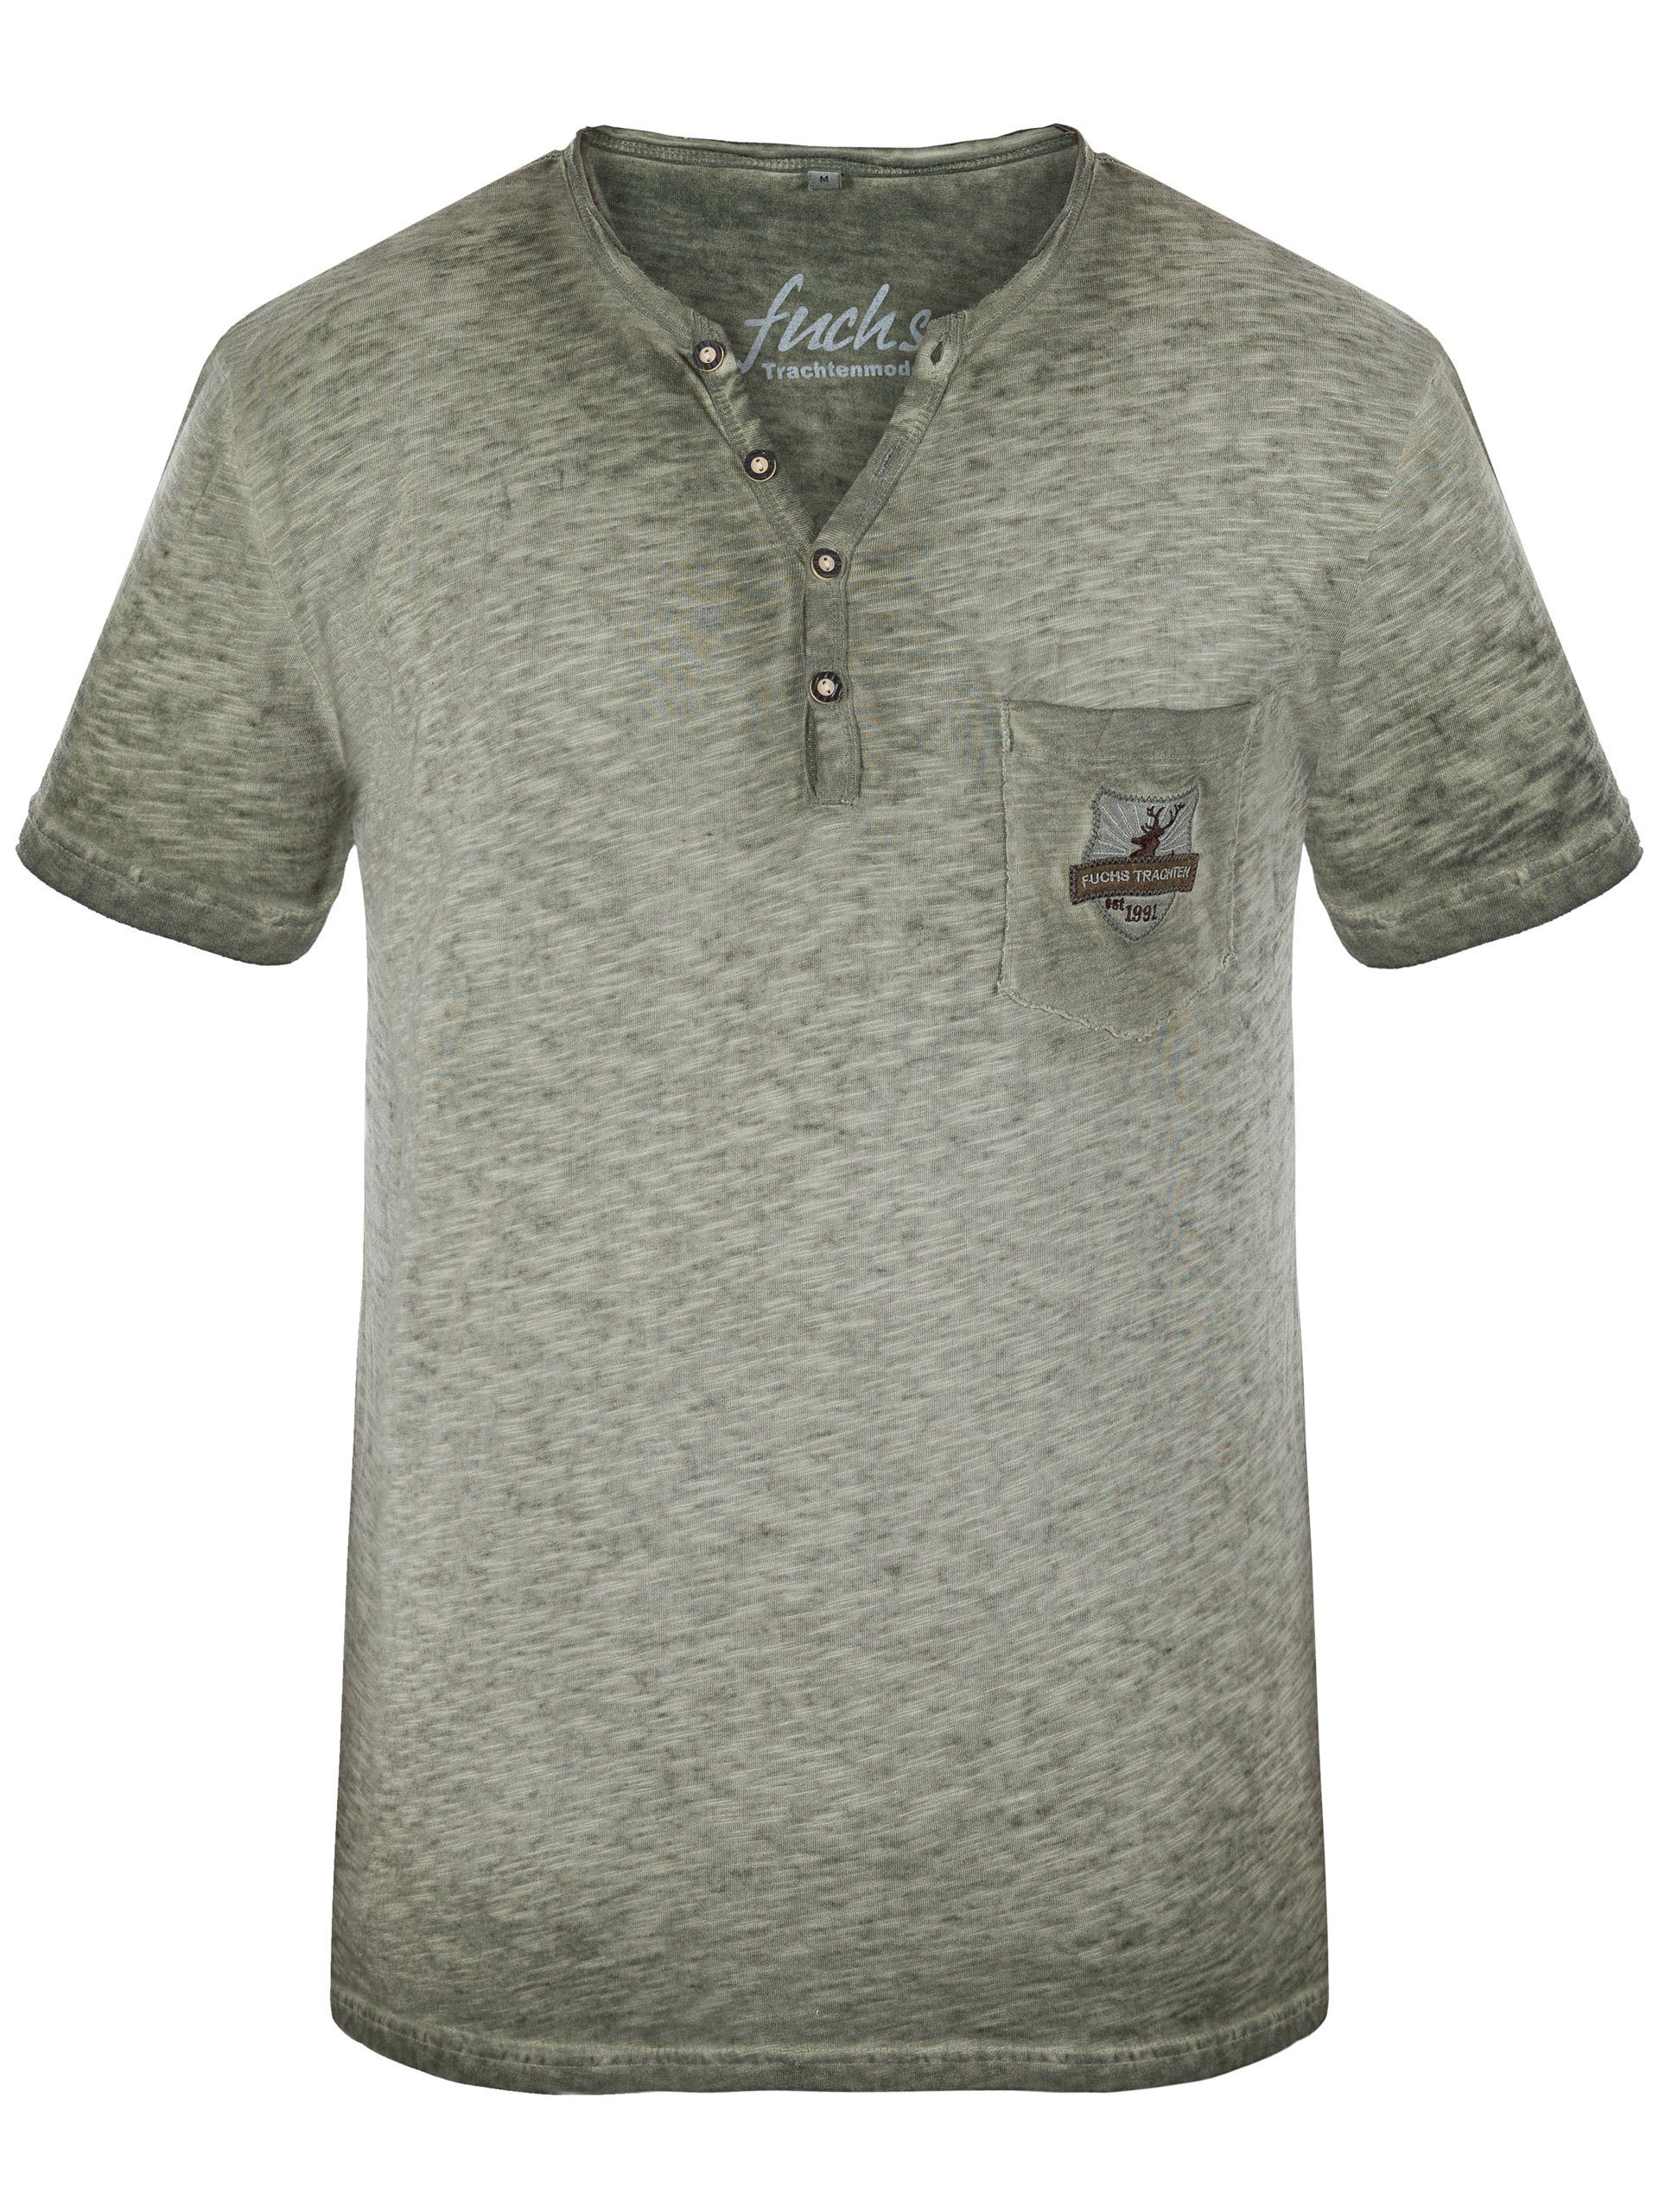 FUCHS T-Shirt oliv % Shirt Baumwolle aus Theo 100 Trachten